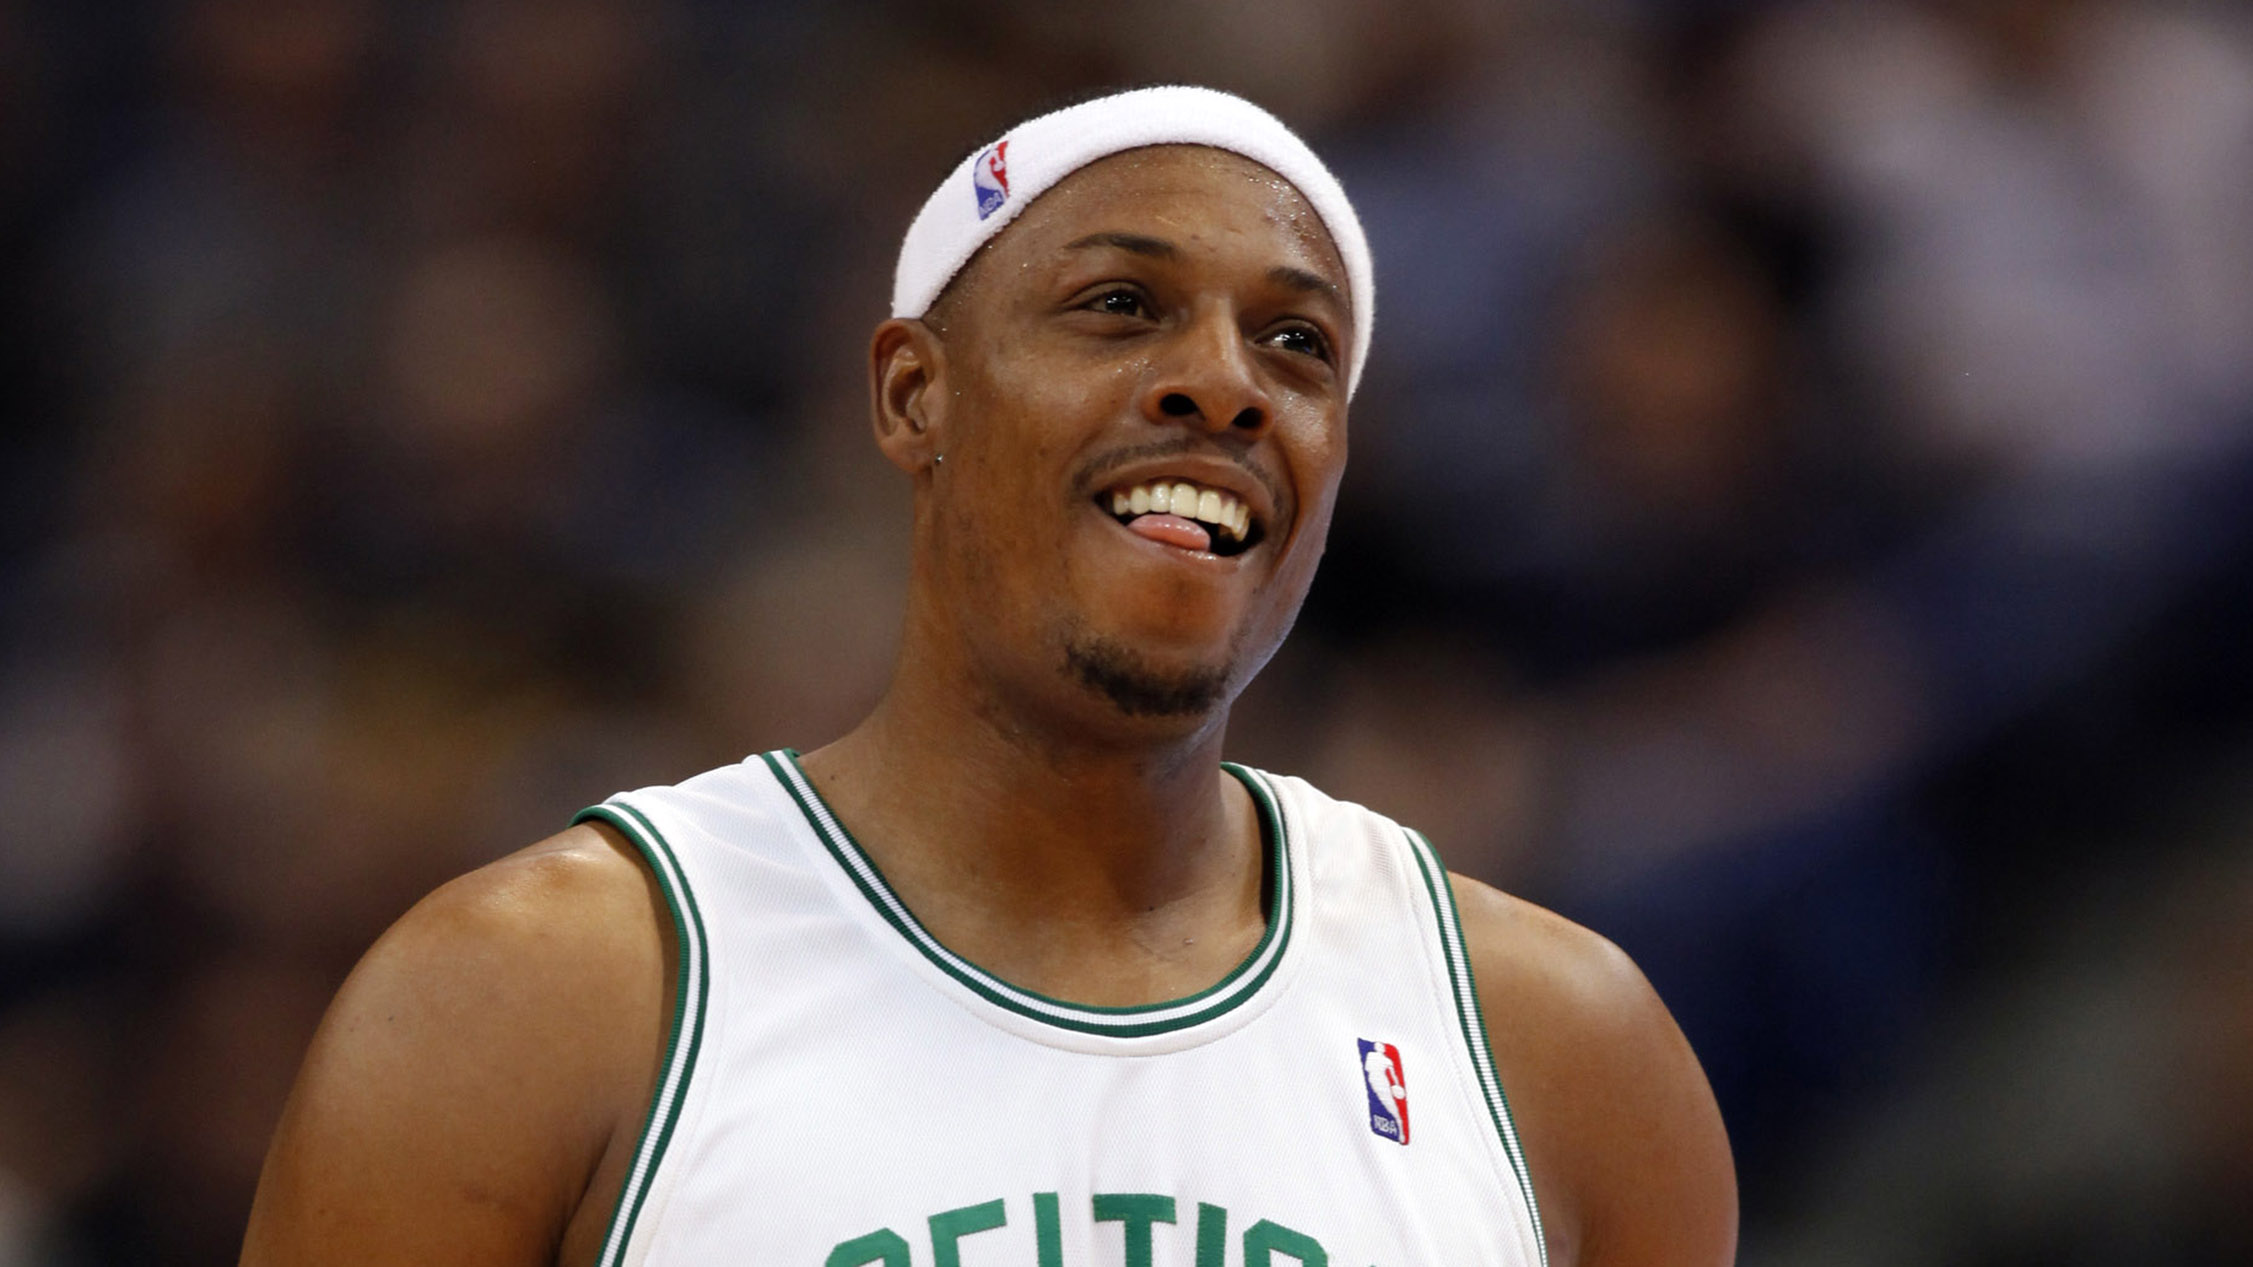 Paul Pierce, Clippers Fall Short In Boston Against Celtics In OT